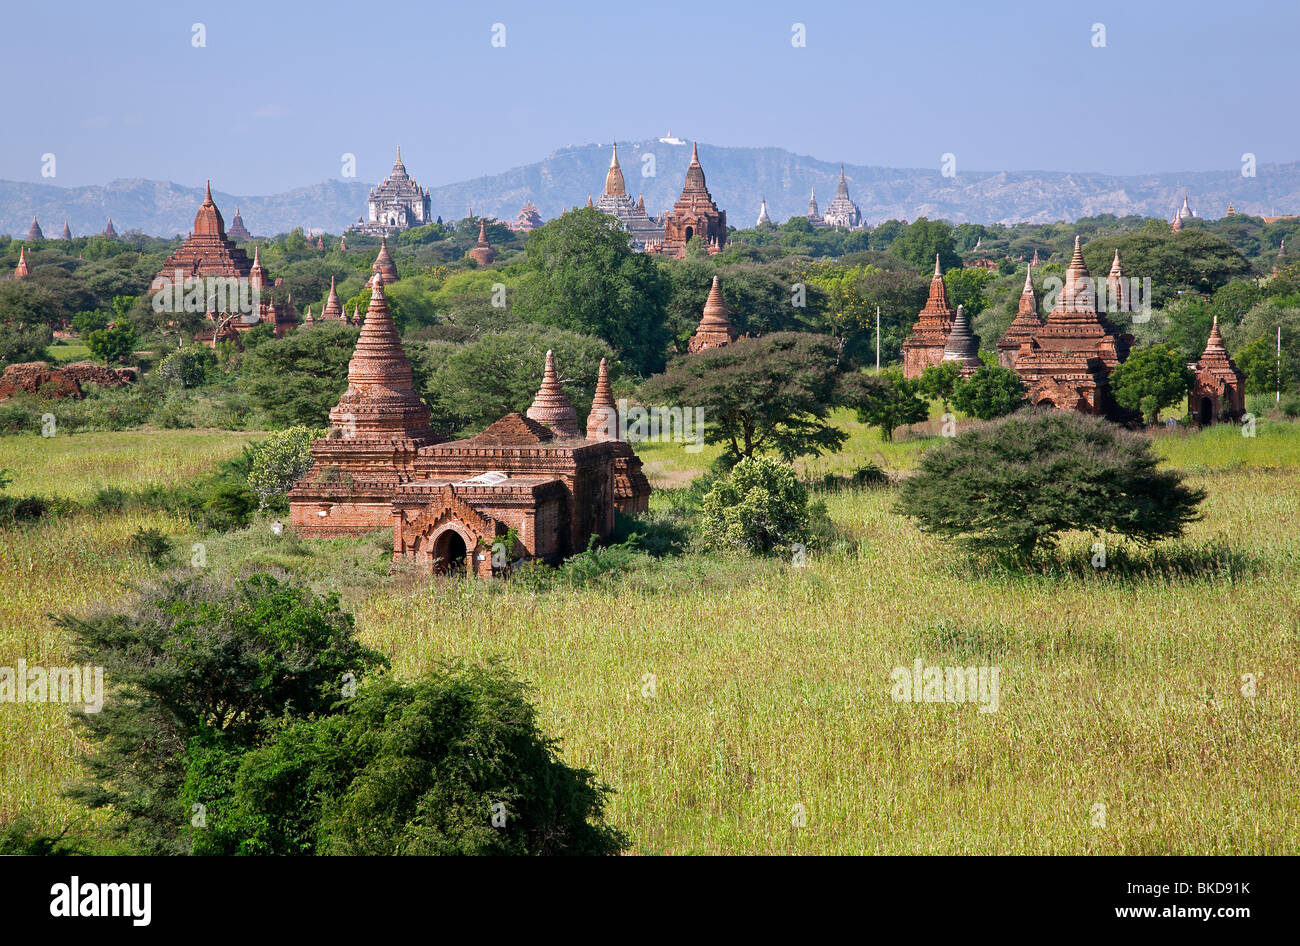 Bagan temples. Myanmar Stock Photo